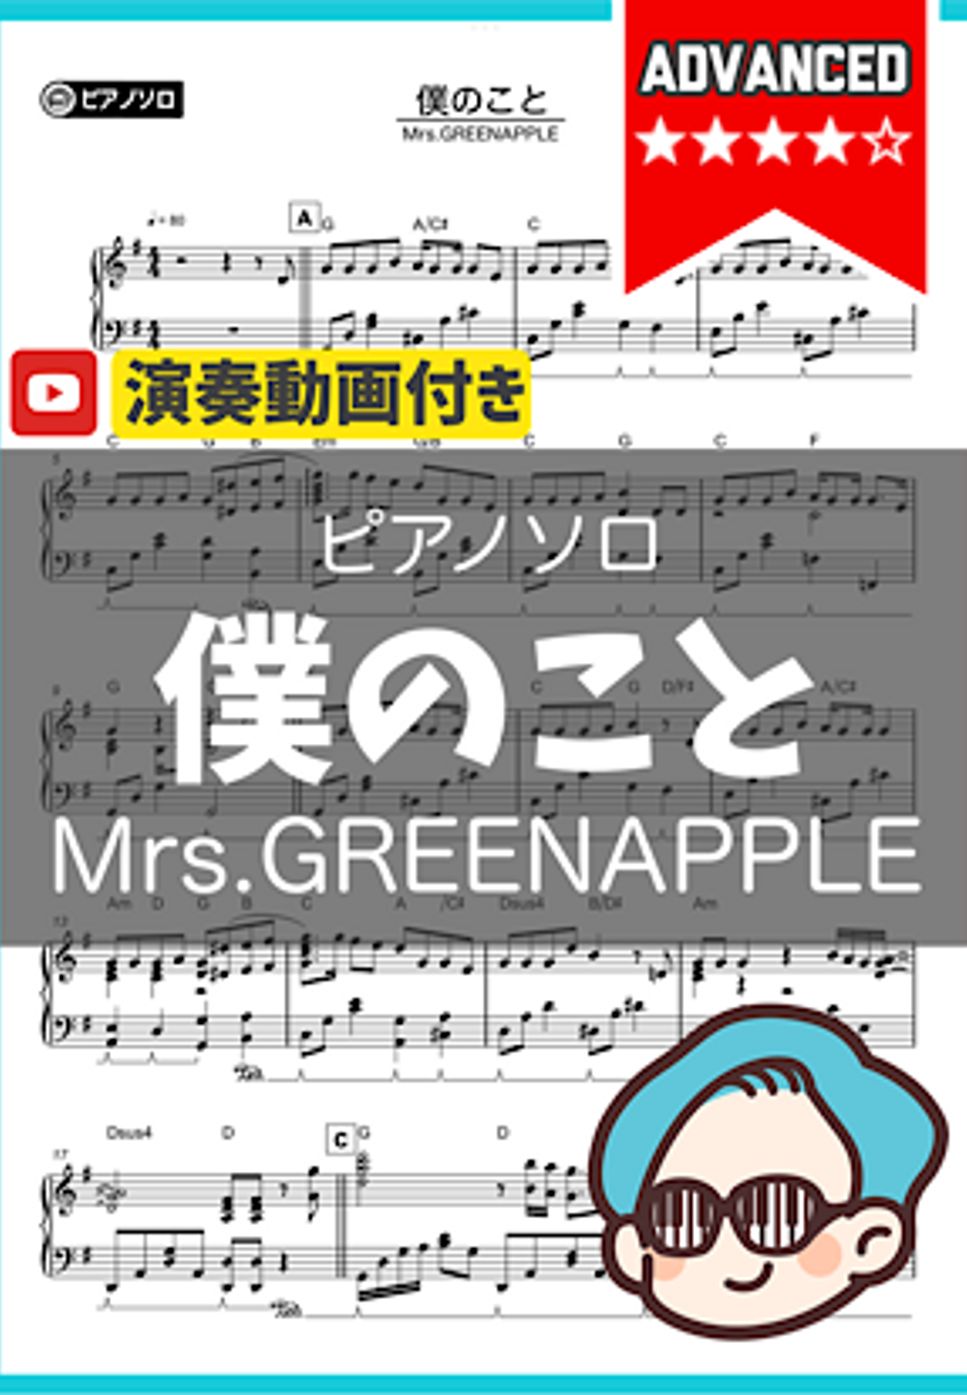 Mrs.GREENAPPLE - 僕のこと by シータピアノ